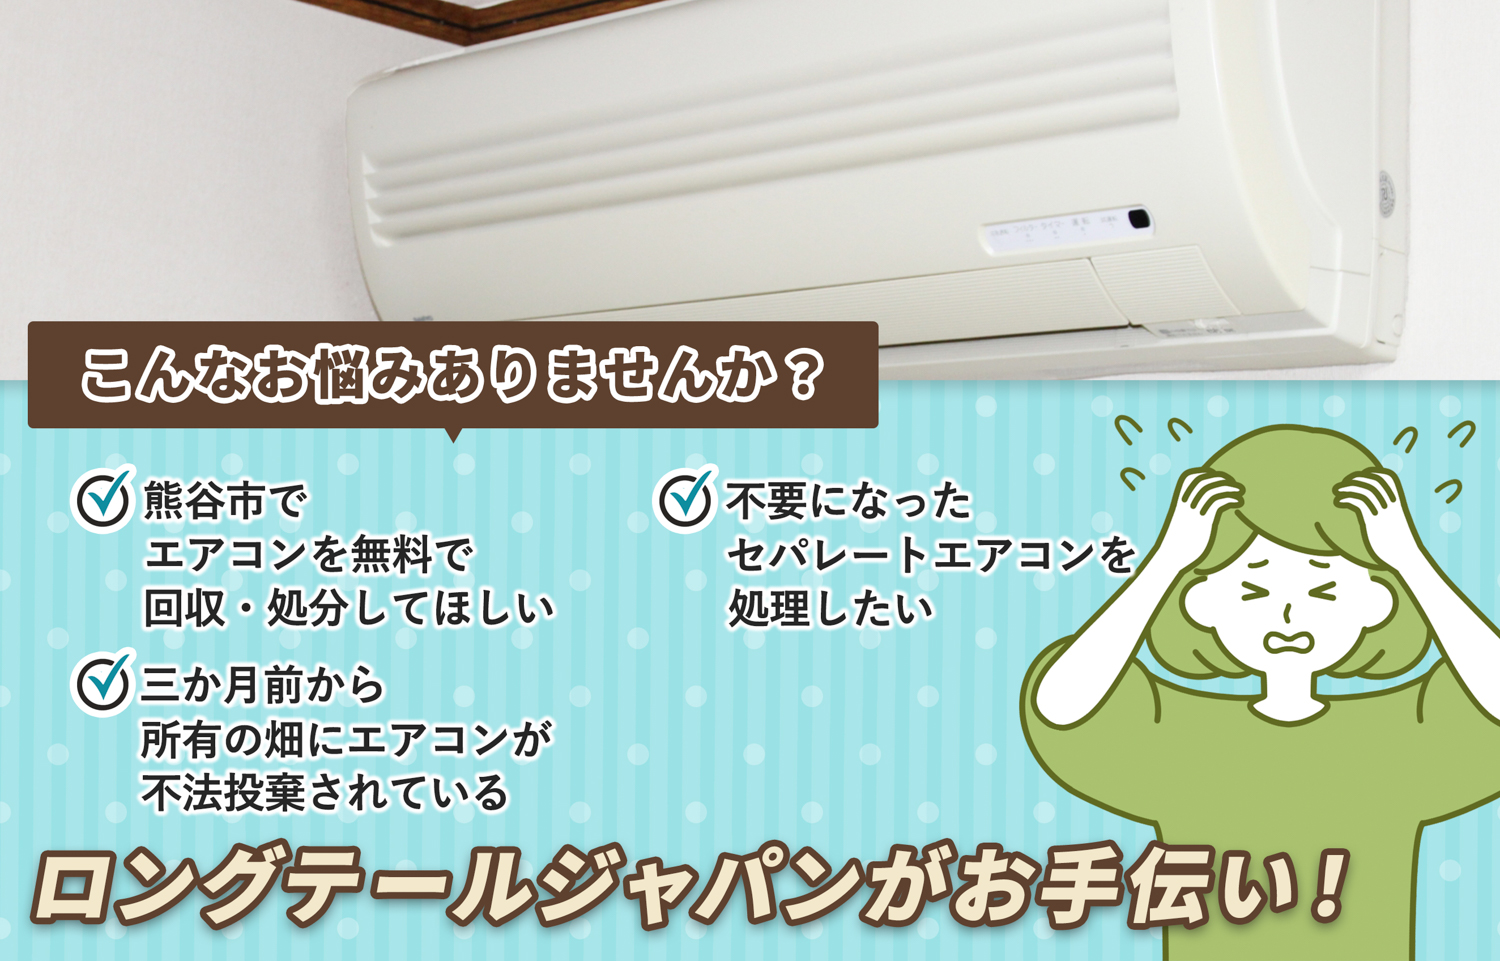 熊谷市でこんなエアコンの処分にお困りでしたらエアコン無料回収処分隊がお手伝いします。